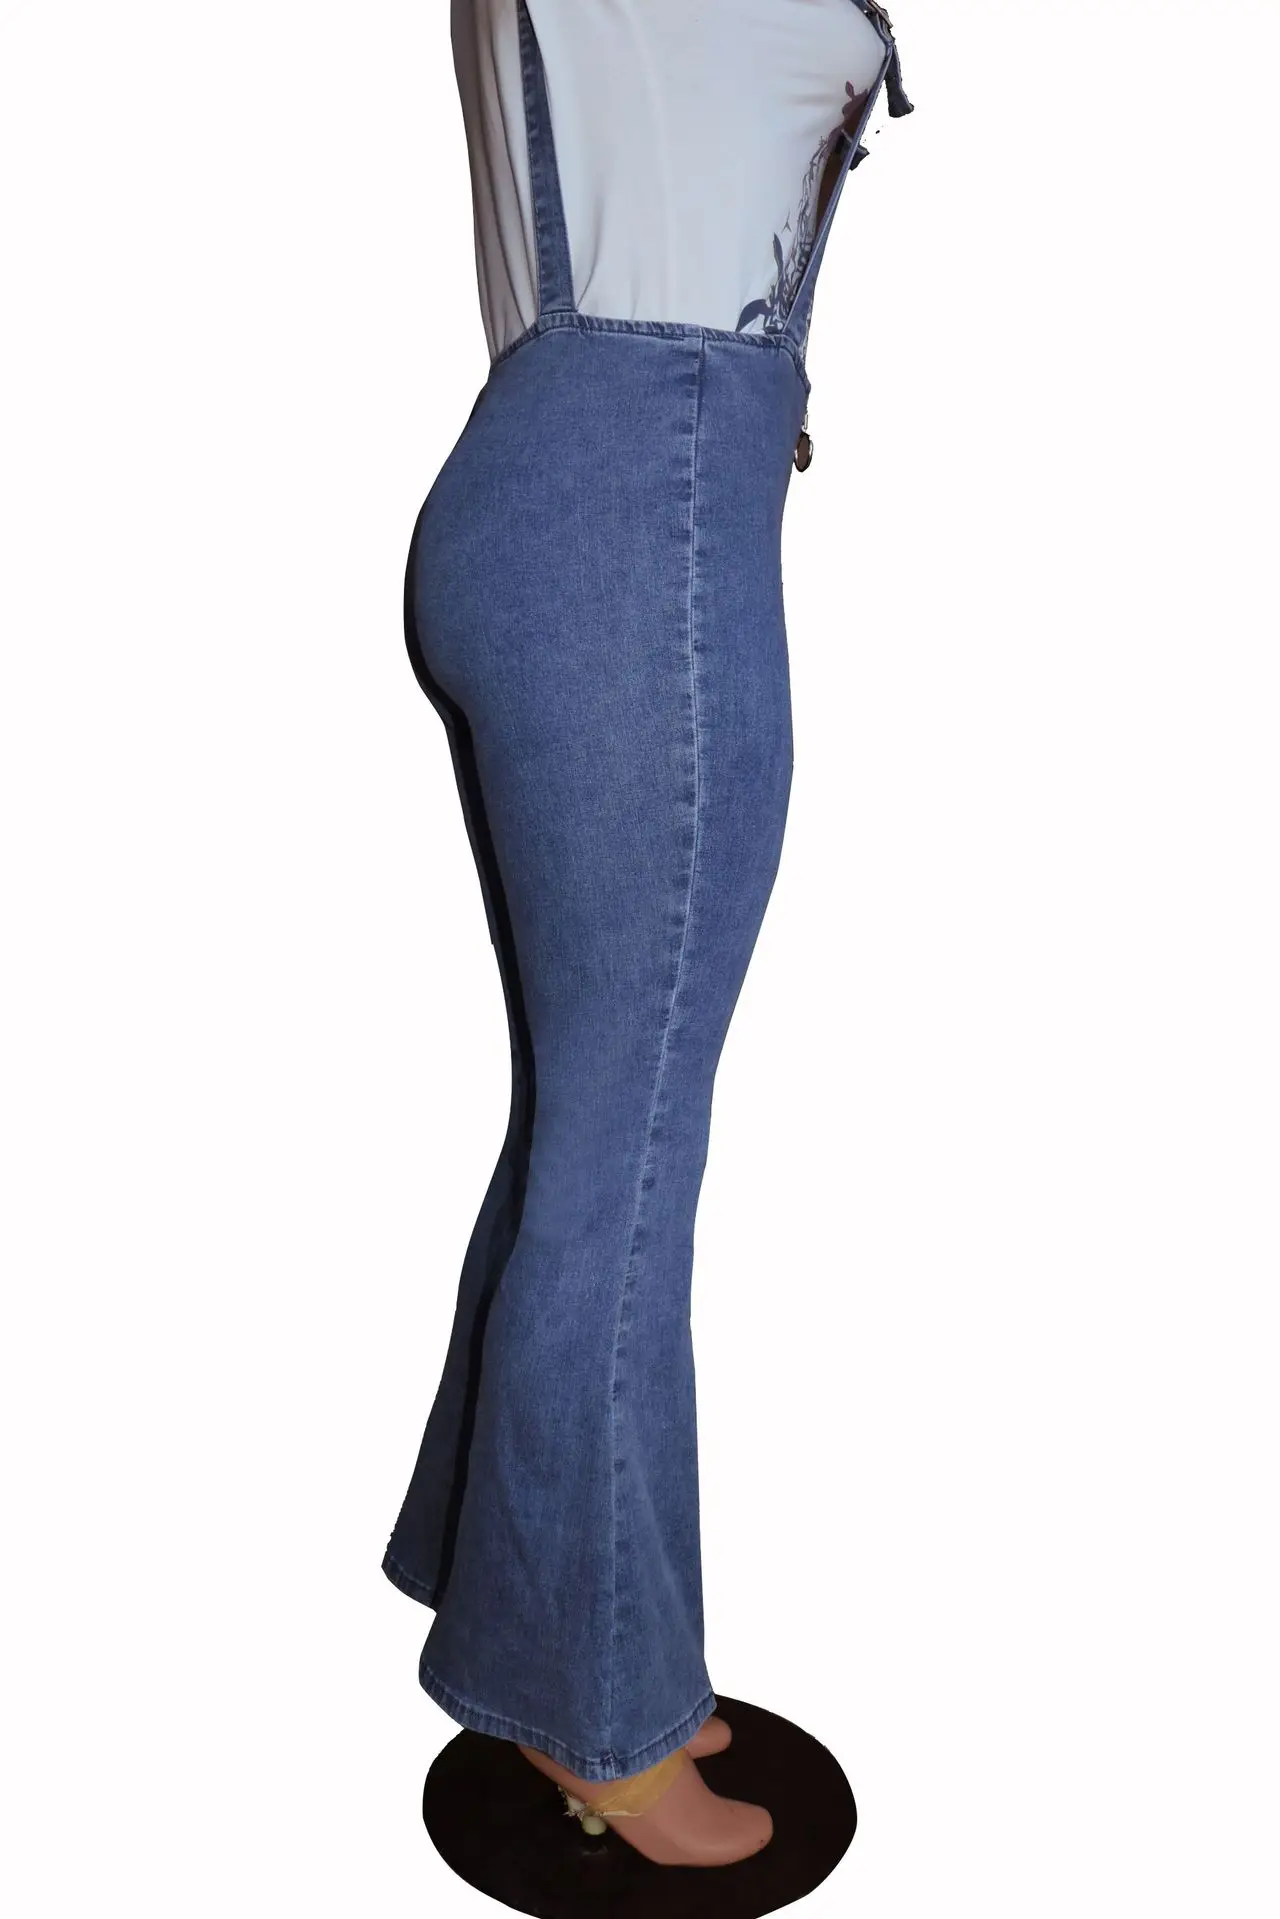 Женские подвешенные джинсы, высокая эластичность, хип-хоп джинсовый комбинезон, высокая талия, джинсовые брюки с колокольчиками, узкие обтягивающие брюки для женщин